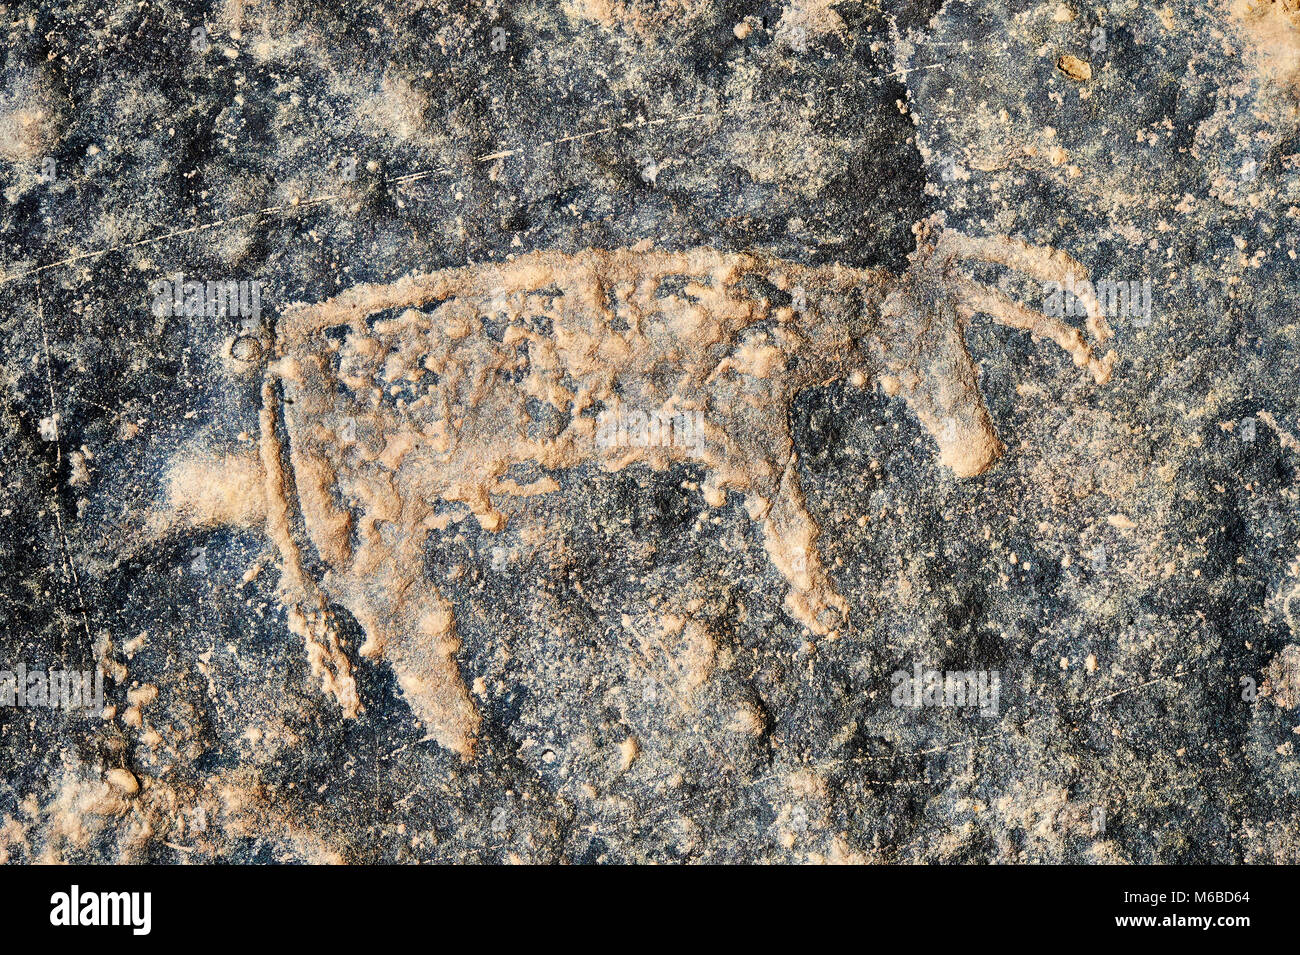 La préhistoire saharienne rock pétroglyphes sculptures art de bovins à partir d'un site 20km à l'est de Taouz, au sud est du Maroc Banque D'Images